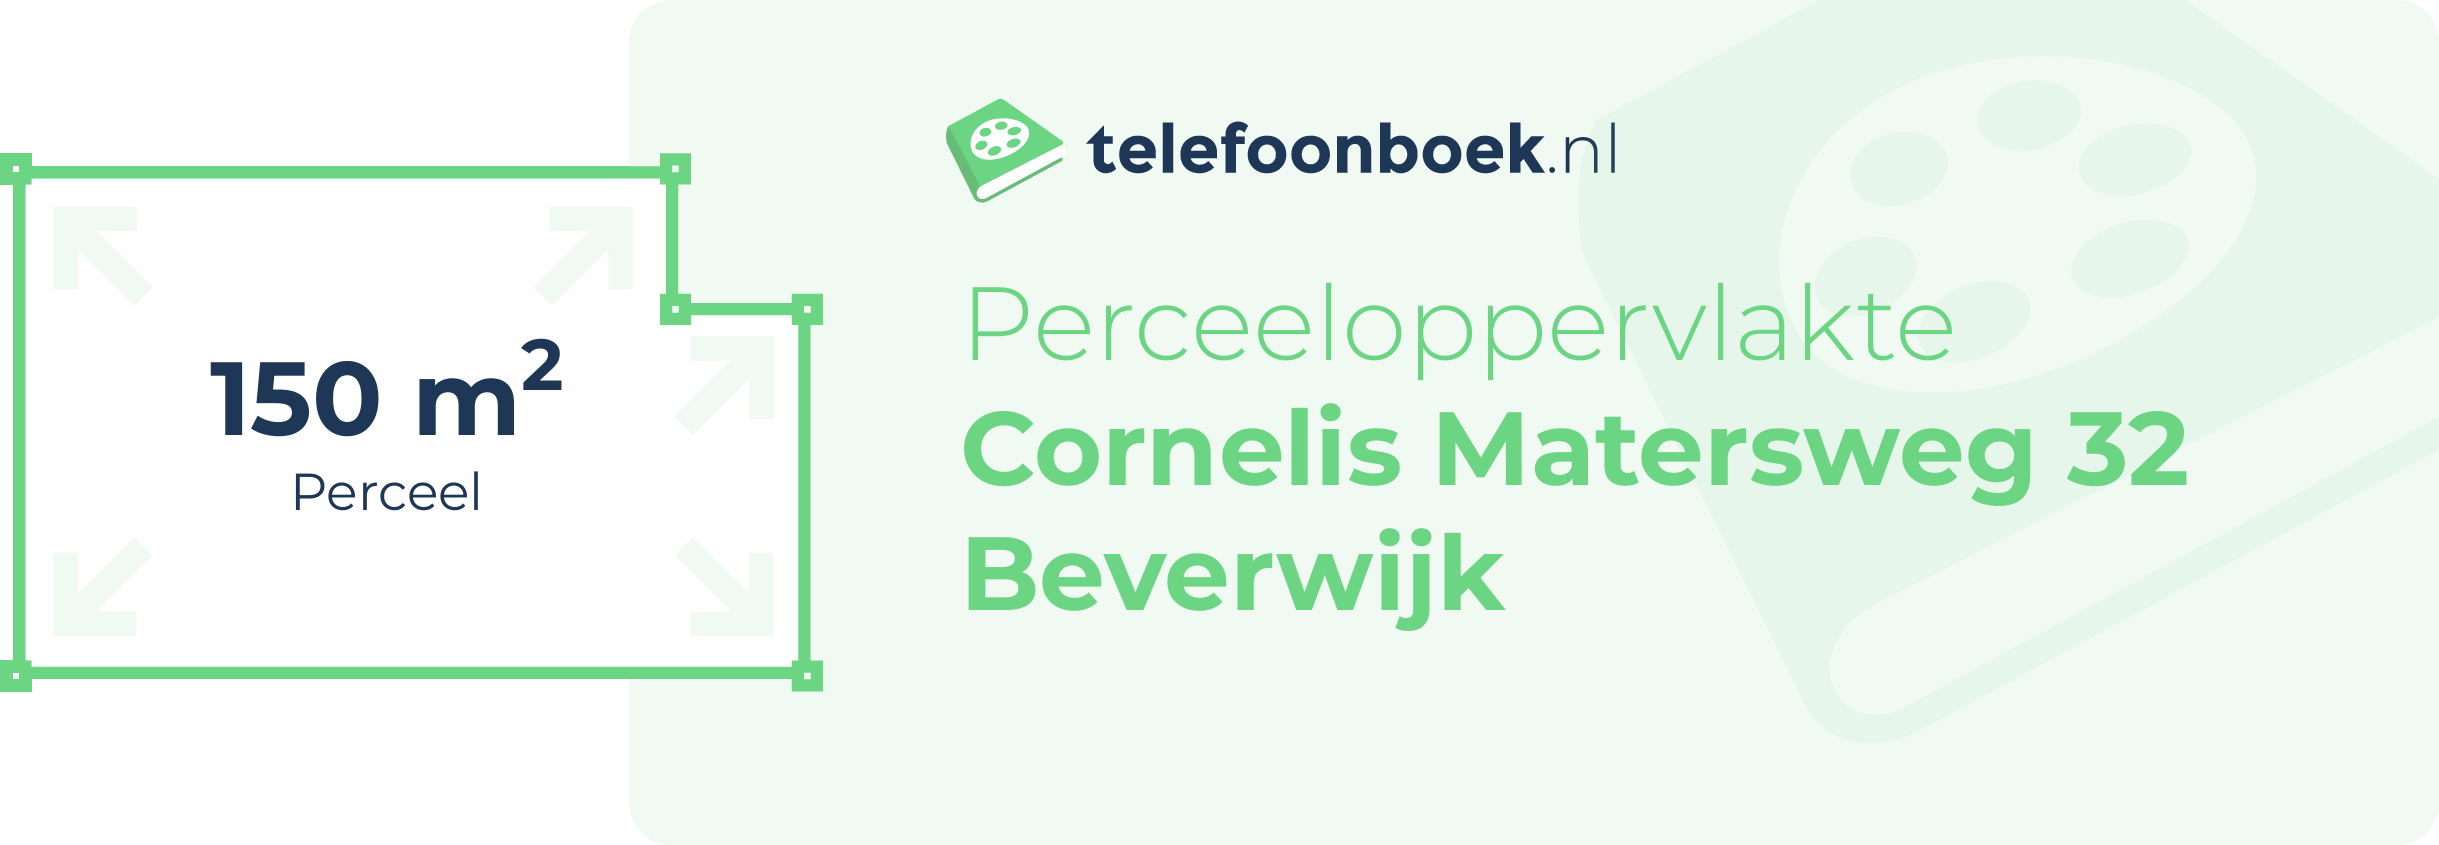 Perceeloppervlakte Cornelis Matersweg 32 Beverwijk